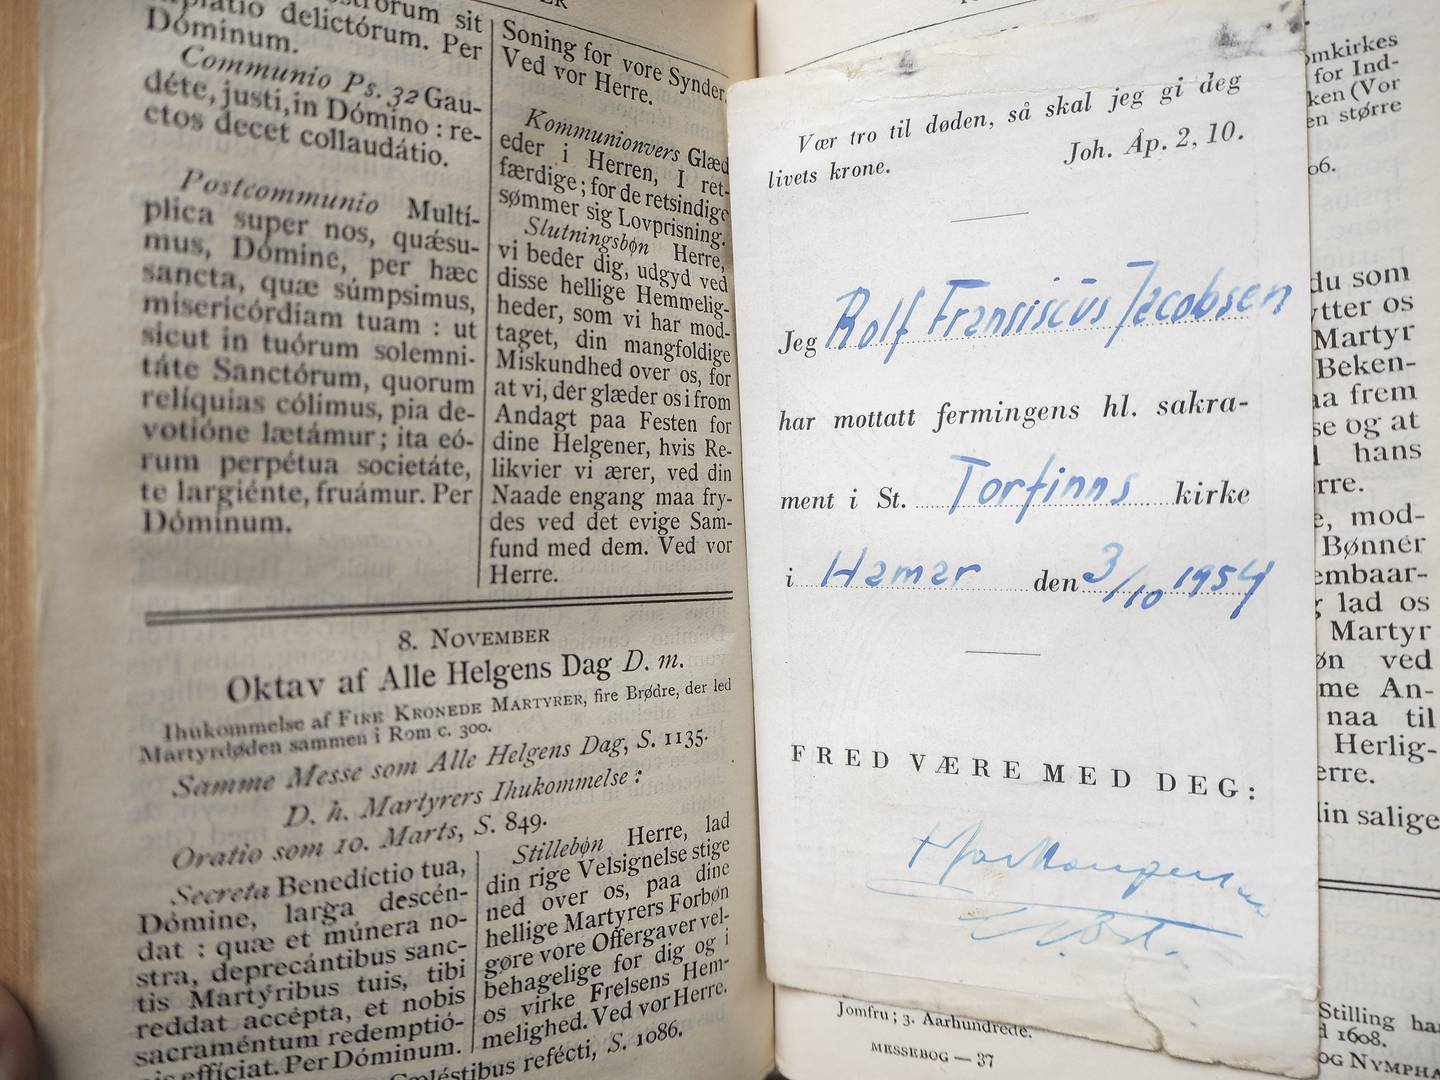 Rolf Jacobsens utgave av Det nye testamentet og messebok. I 
messeboken ligger to pressede firkløvere.